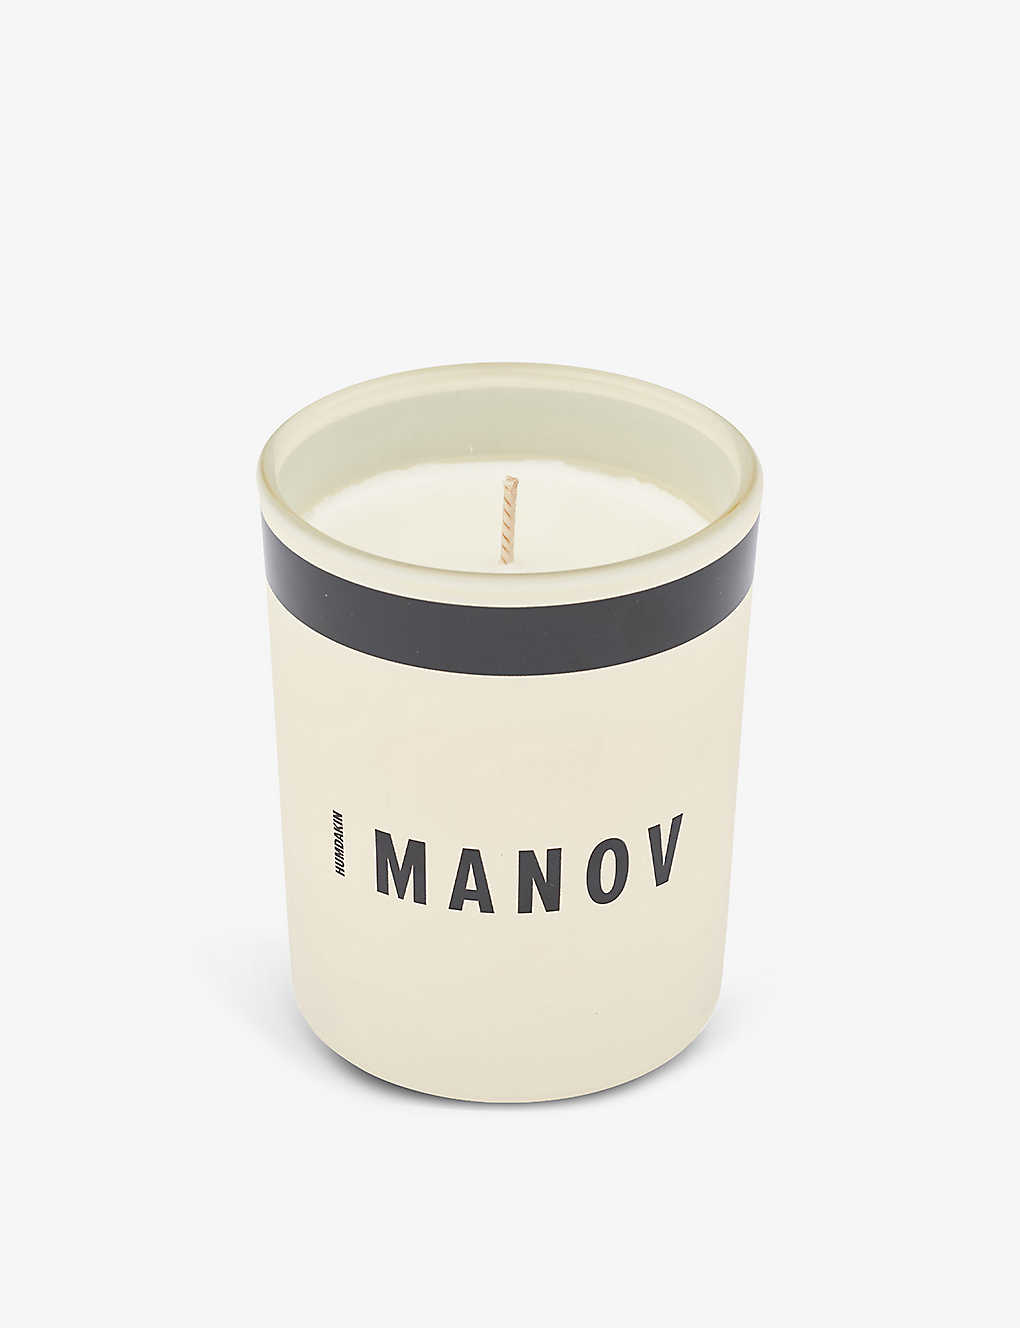 Humdakin Manov Scented Wax Candle 210g